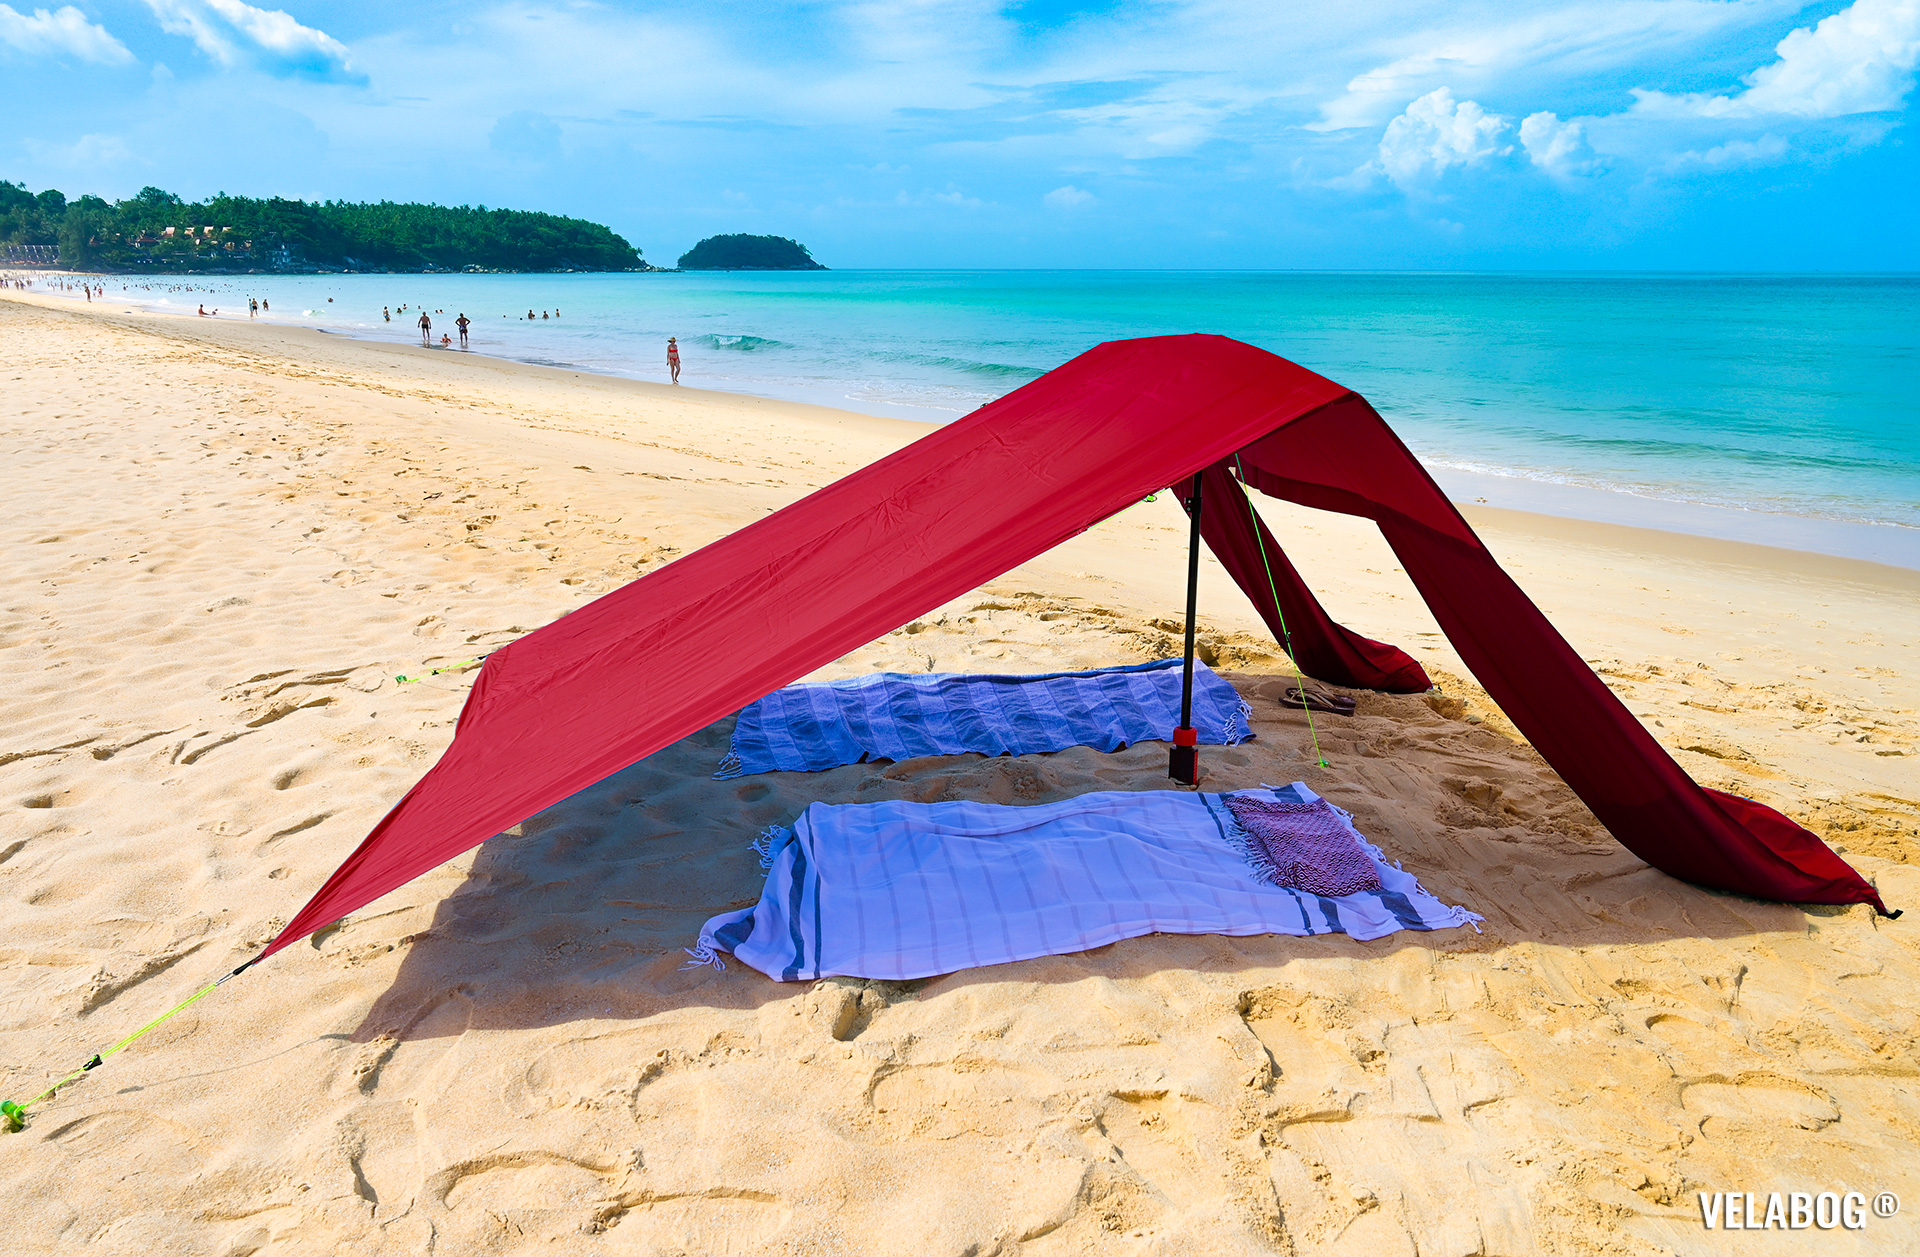 Tenda da spiaggia Velabog Breeze, rossa. La migliore protezione dal sole sulla spiaggia anche in assenza del vento.